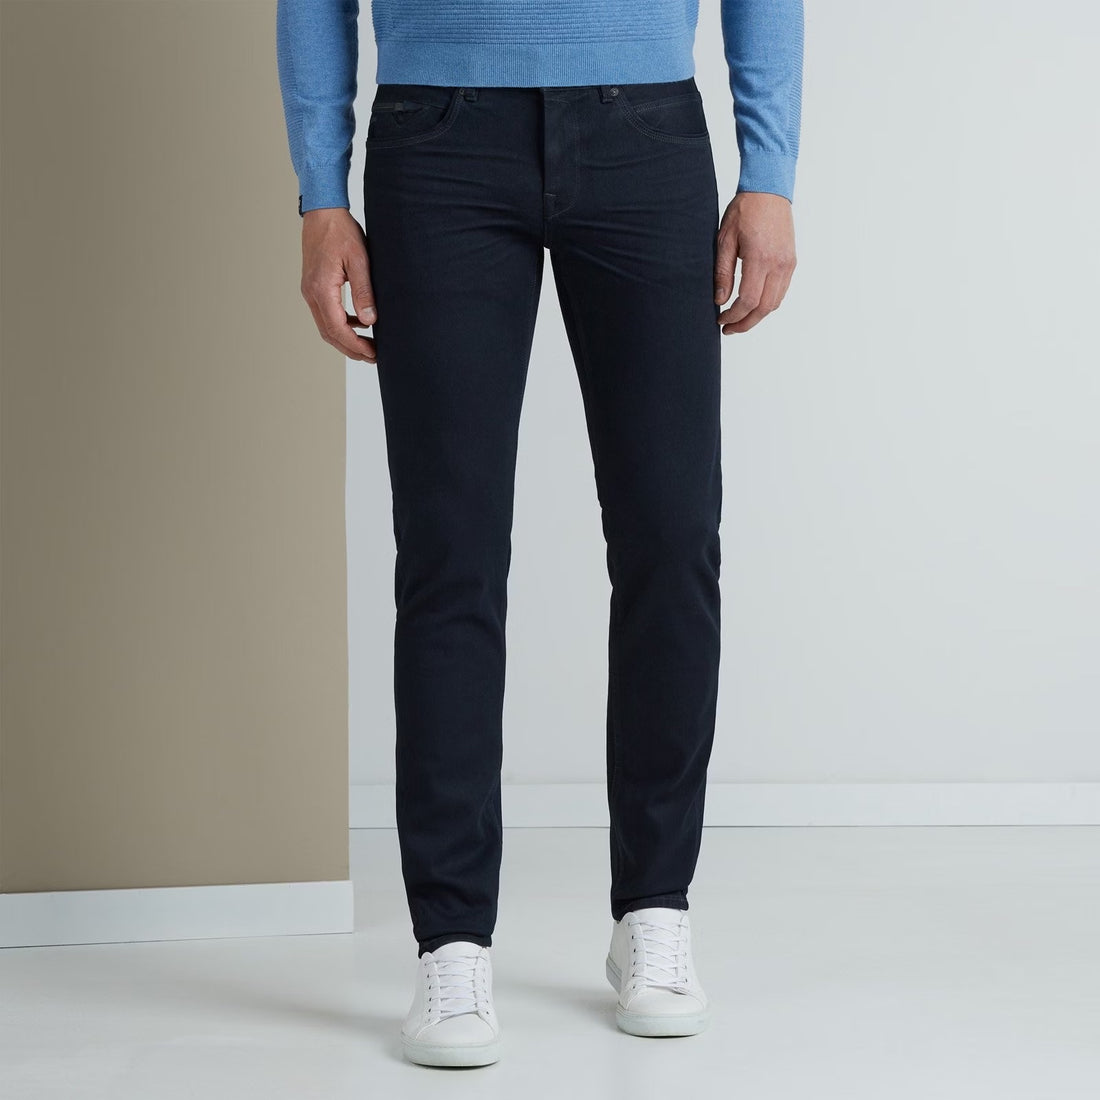 De iconische V850 slim fit jeans, uitgevoerd in de bekende bi-stretch kwaliteit, biedt ultiem draagcomfort. Met deze jeans kun je alle kanten op. De stijlvolle kleur maakt hem gemakkelijk te combineren. De tijdloze Vanguard details maken deze stijl helemaal compleet.